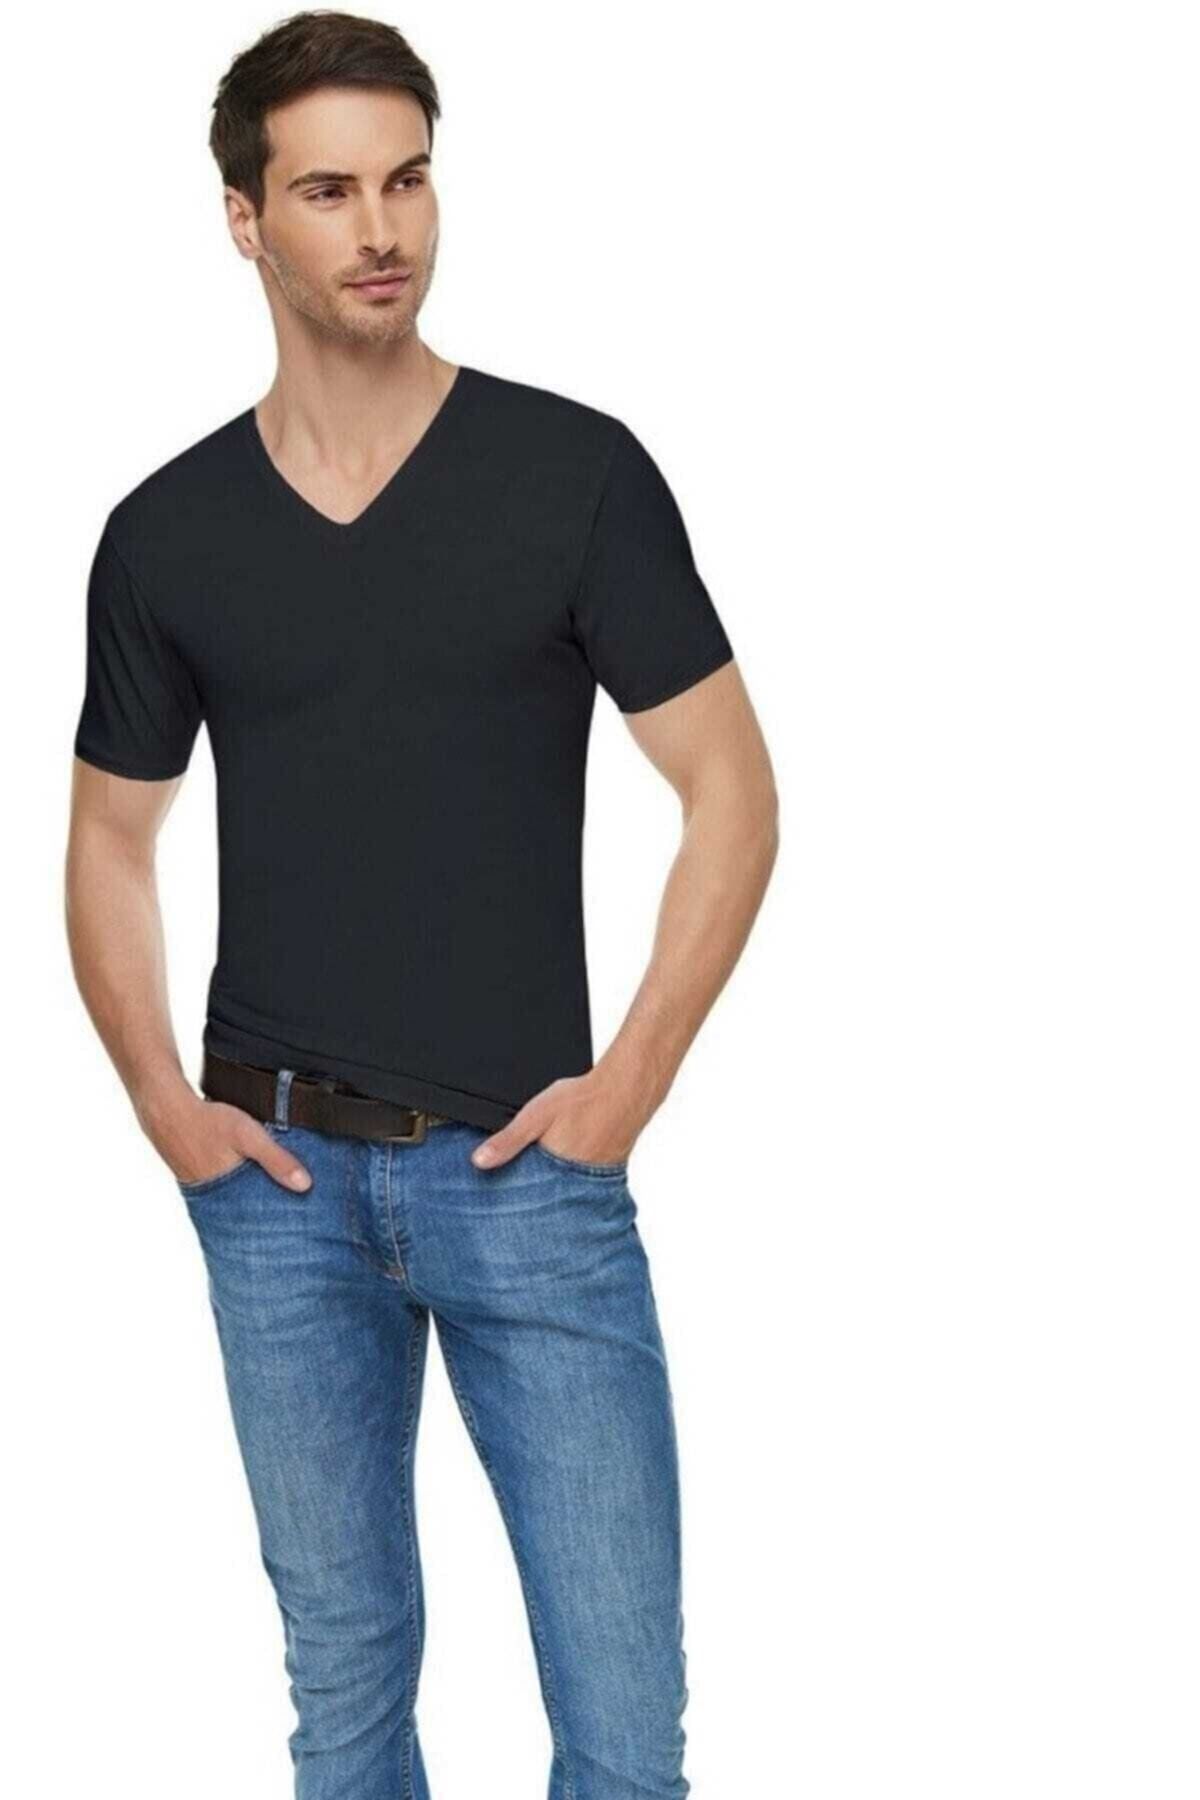 Tutku Elit Erkek Siyah Elastan Likralı Pamuklu Tişört